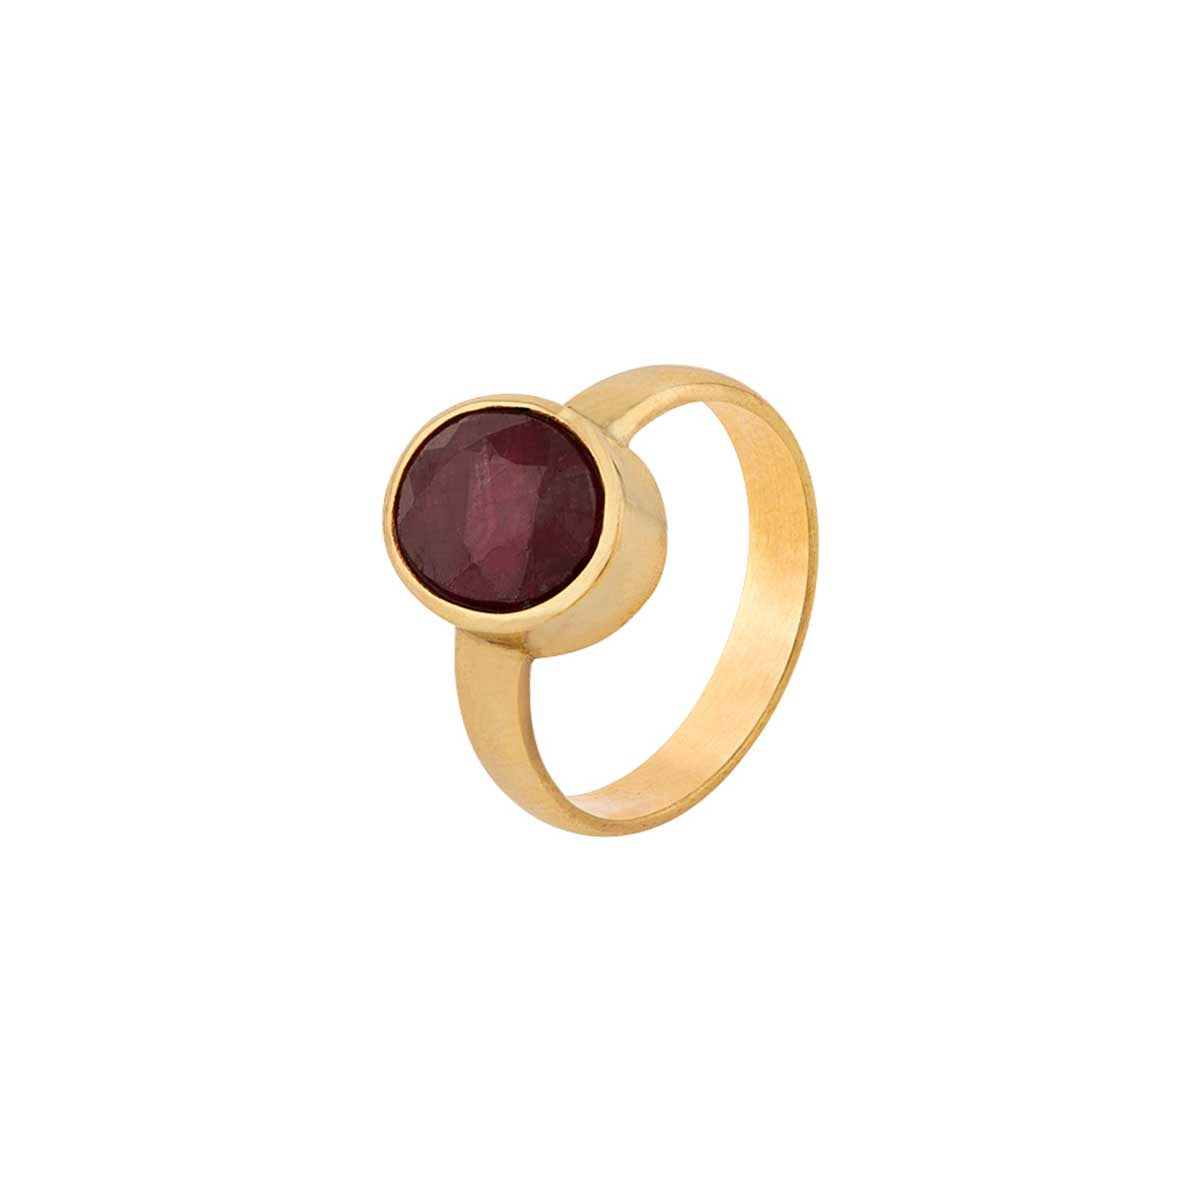 LMDPRAJAPATIS 7.25 Ratti 6.50 Carat Original Red Ruby Manik Gold Ring  Certified Gemstone Adjustable Ring For Men And Women : Amazon.in: Fashion